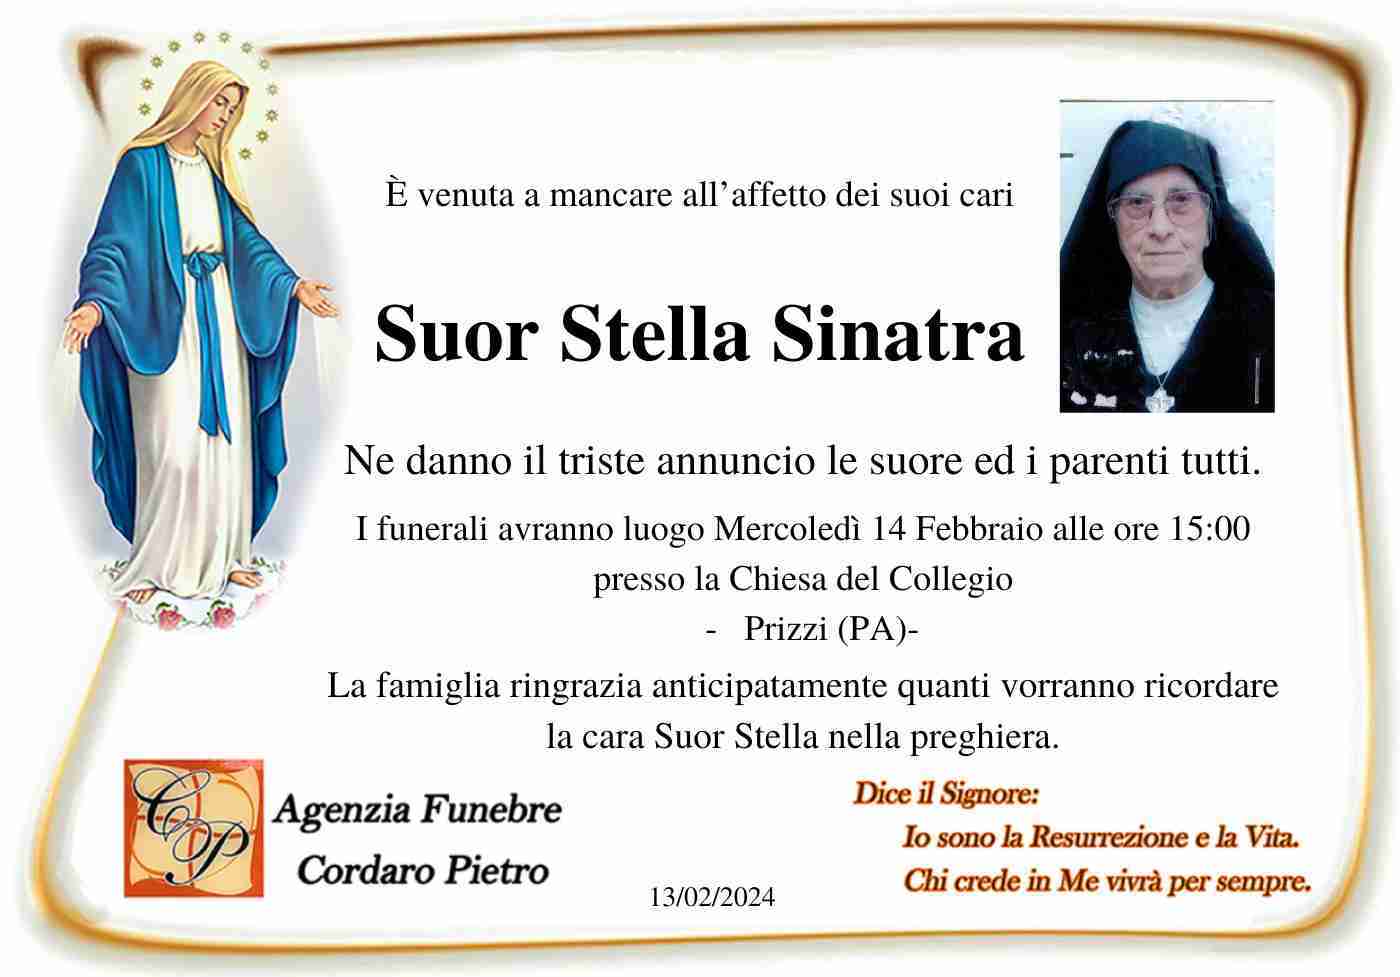 Suor Stella Sinatra